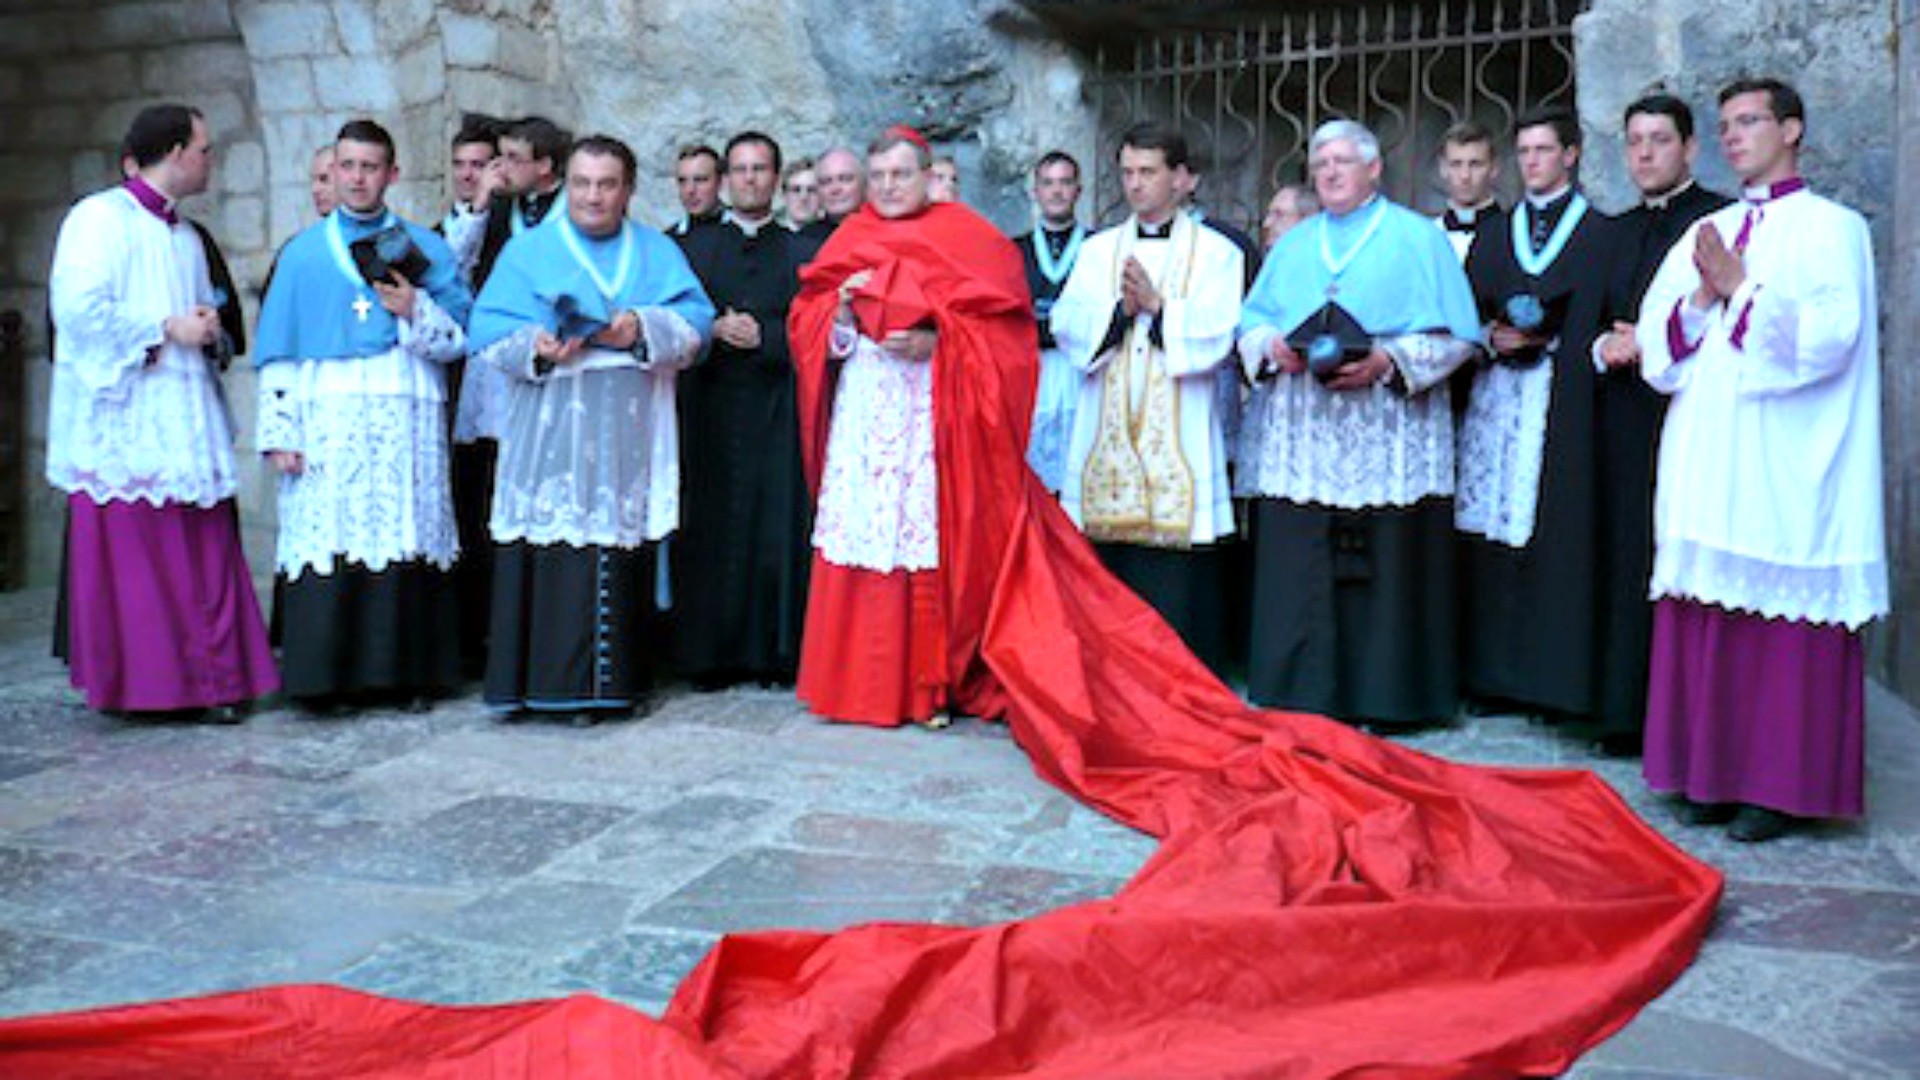 Le cardinal Raymond Leo Burke à Rocamadour (Photo: www.riposte-catholique.fr)